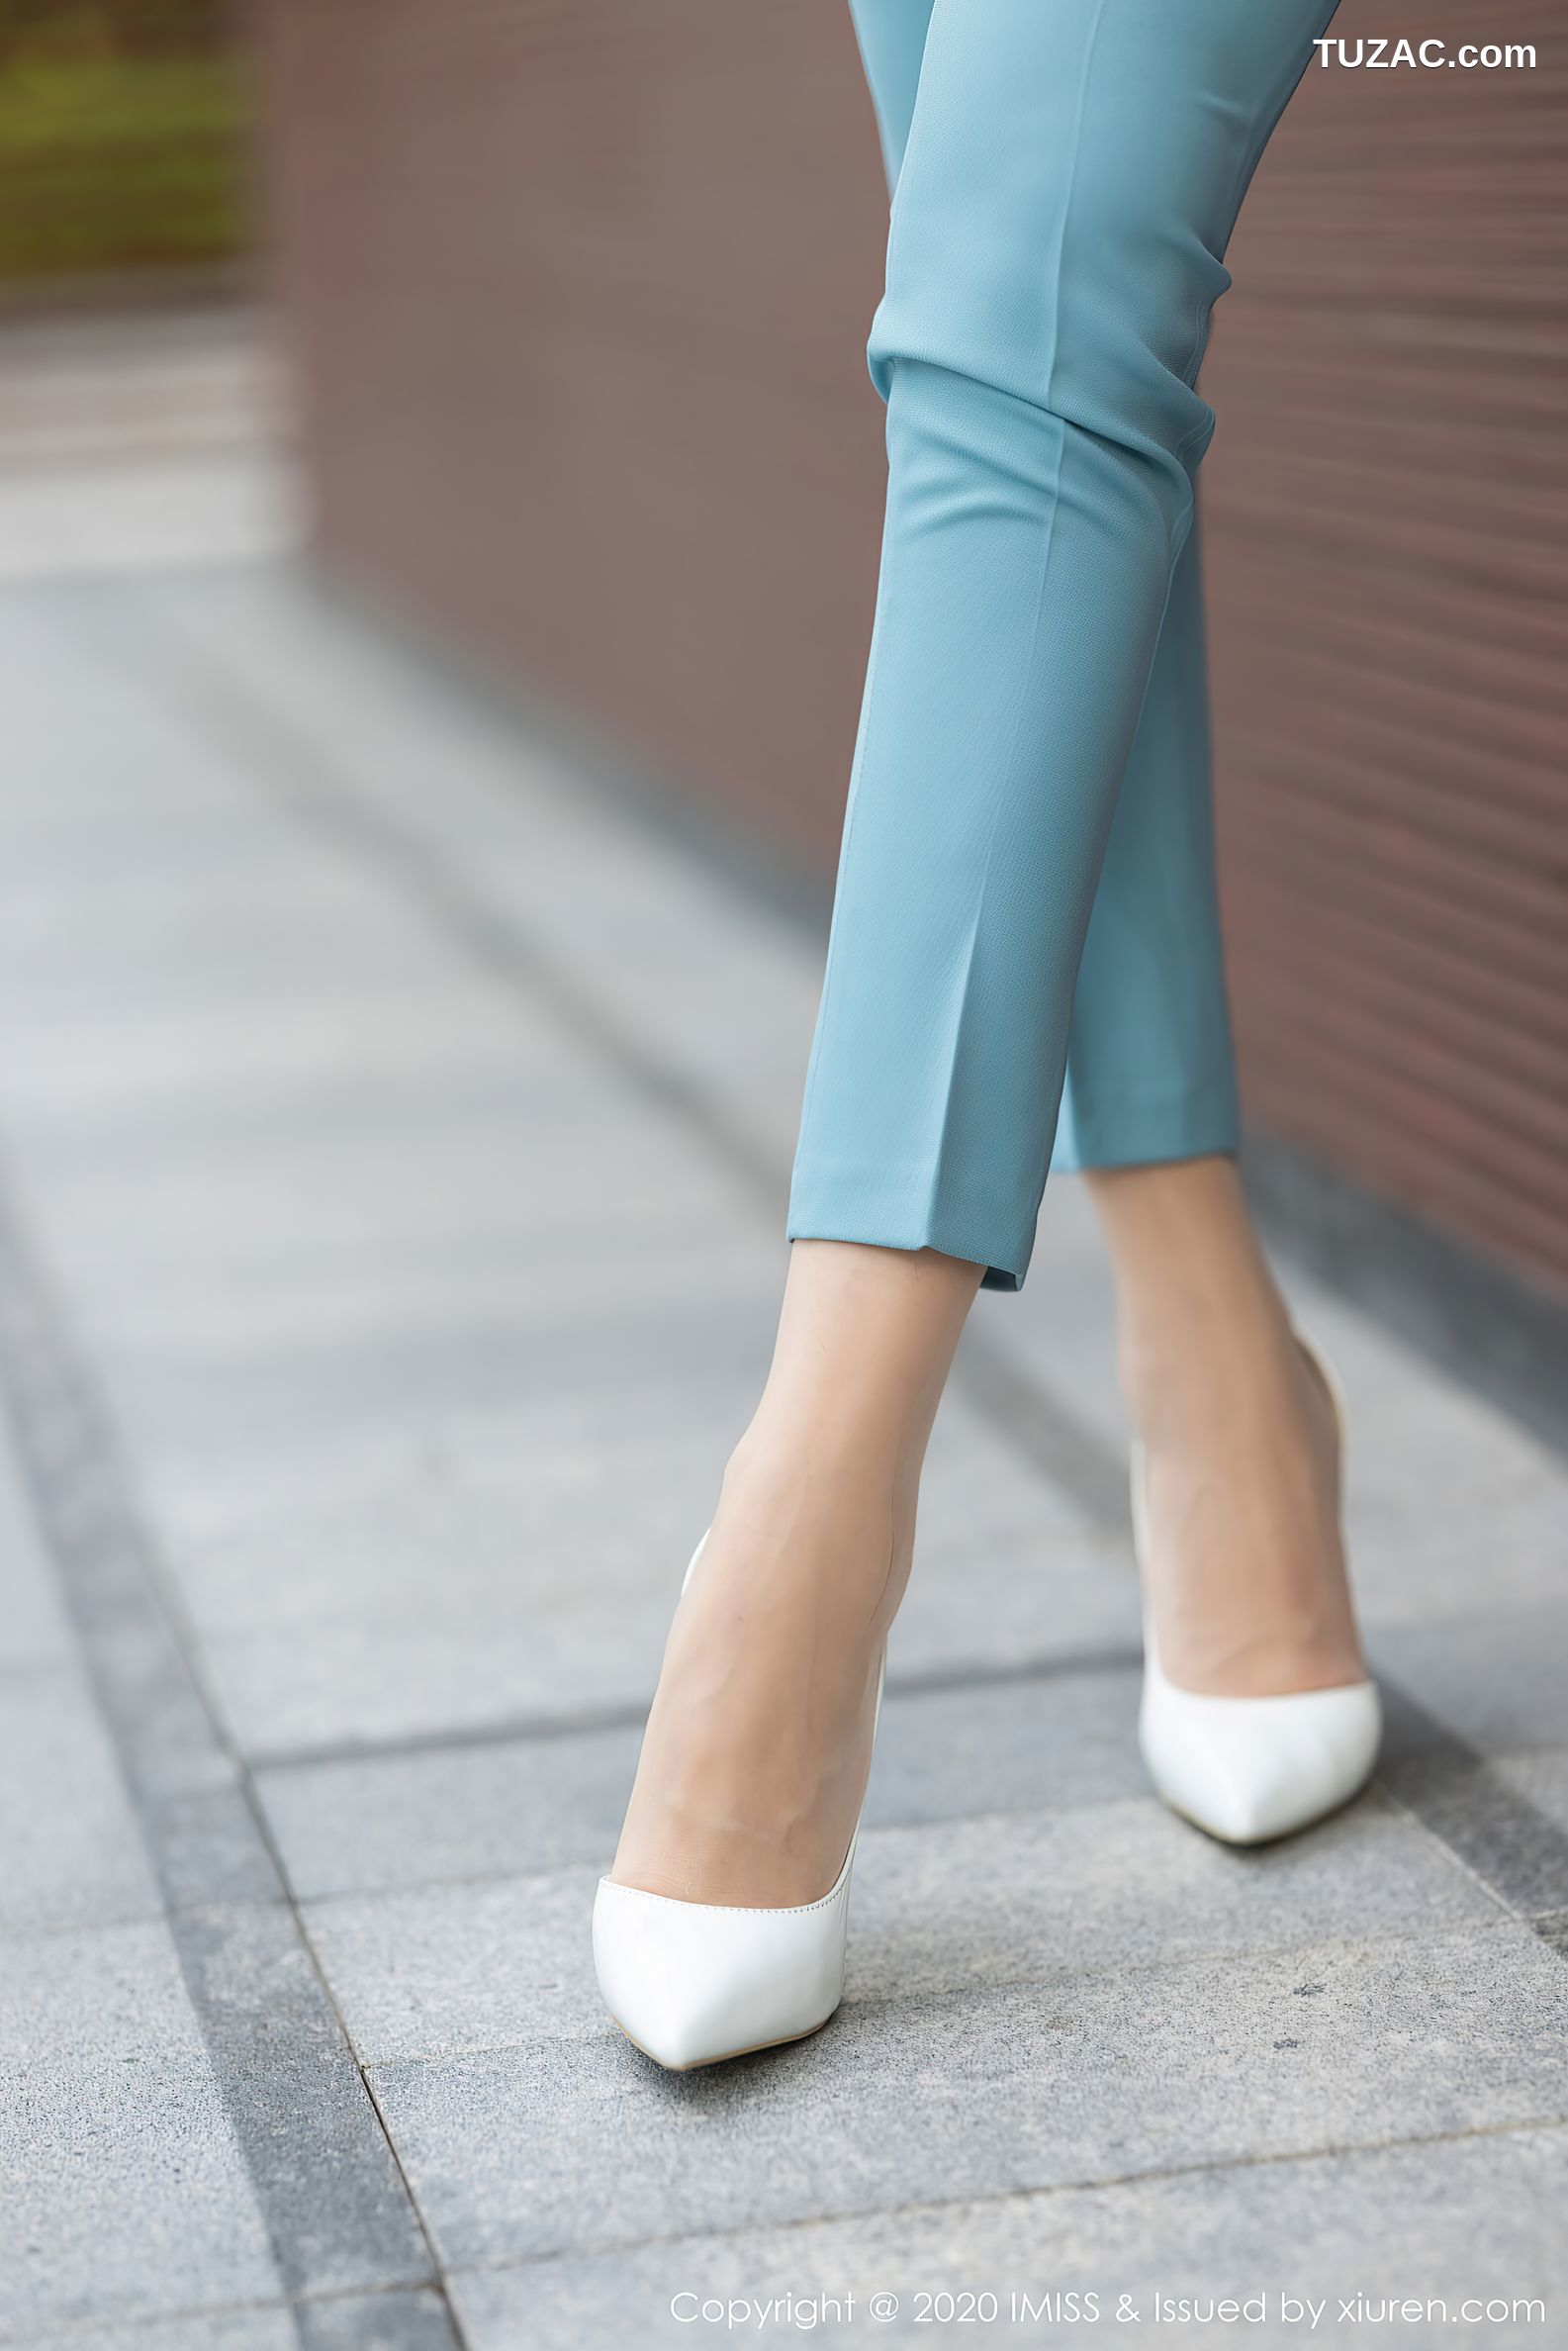 IMiss爱蜜社-532-vanessa-浅蓝色的典雅职业装丝袜美腿